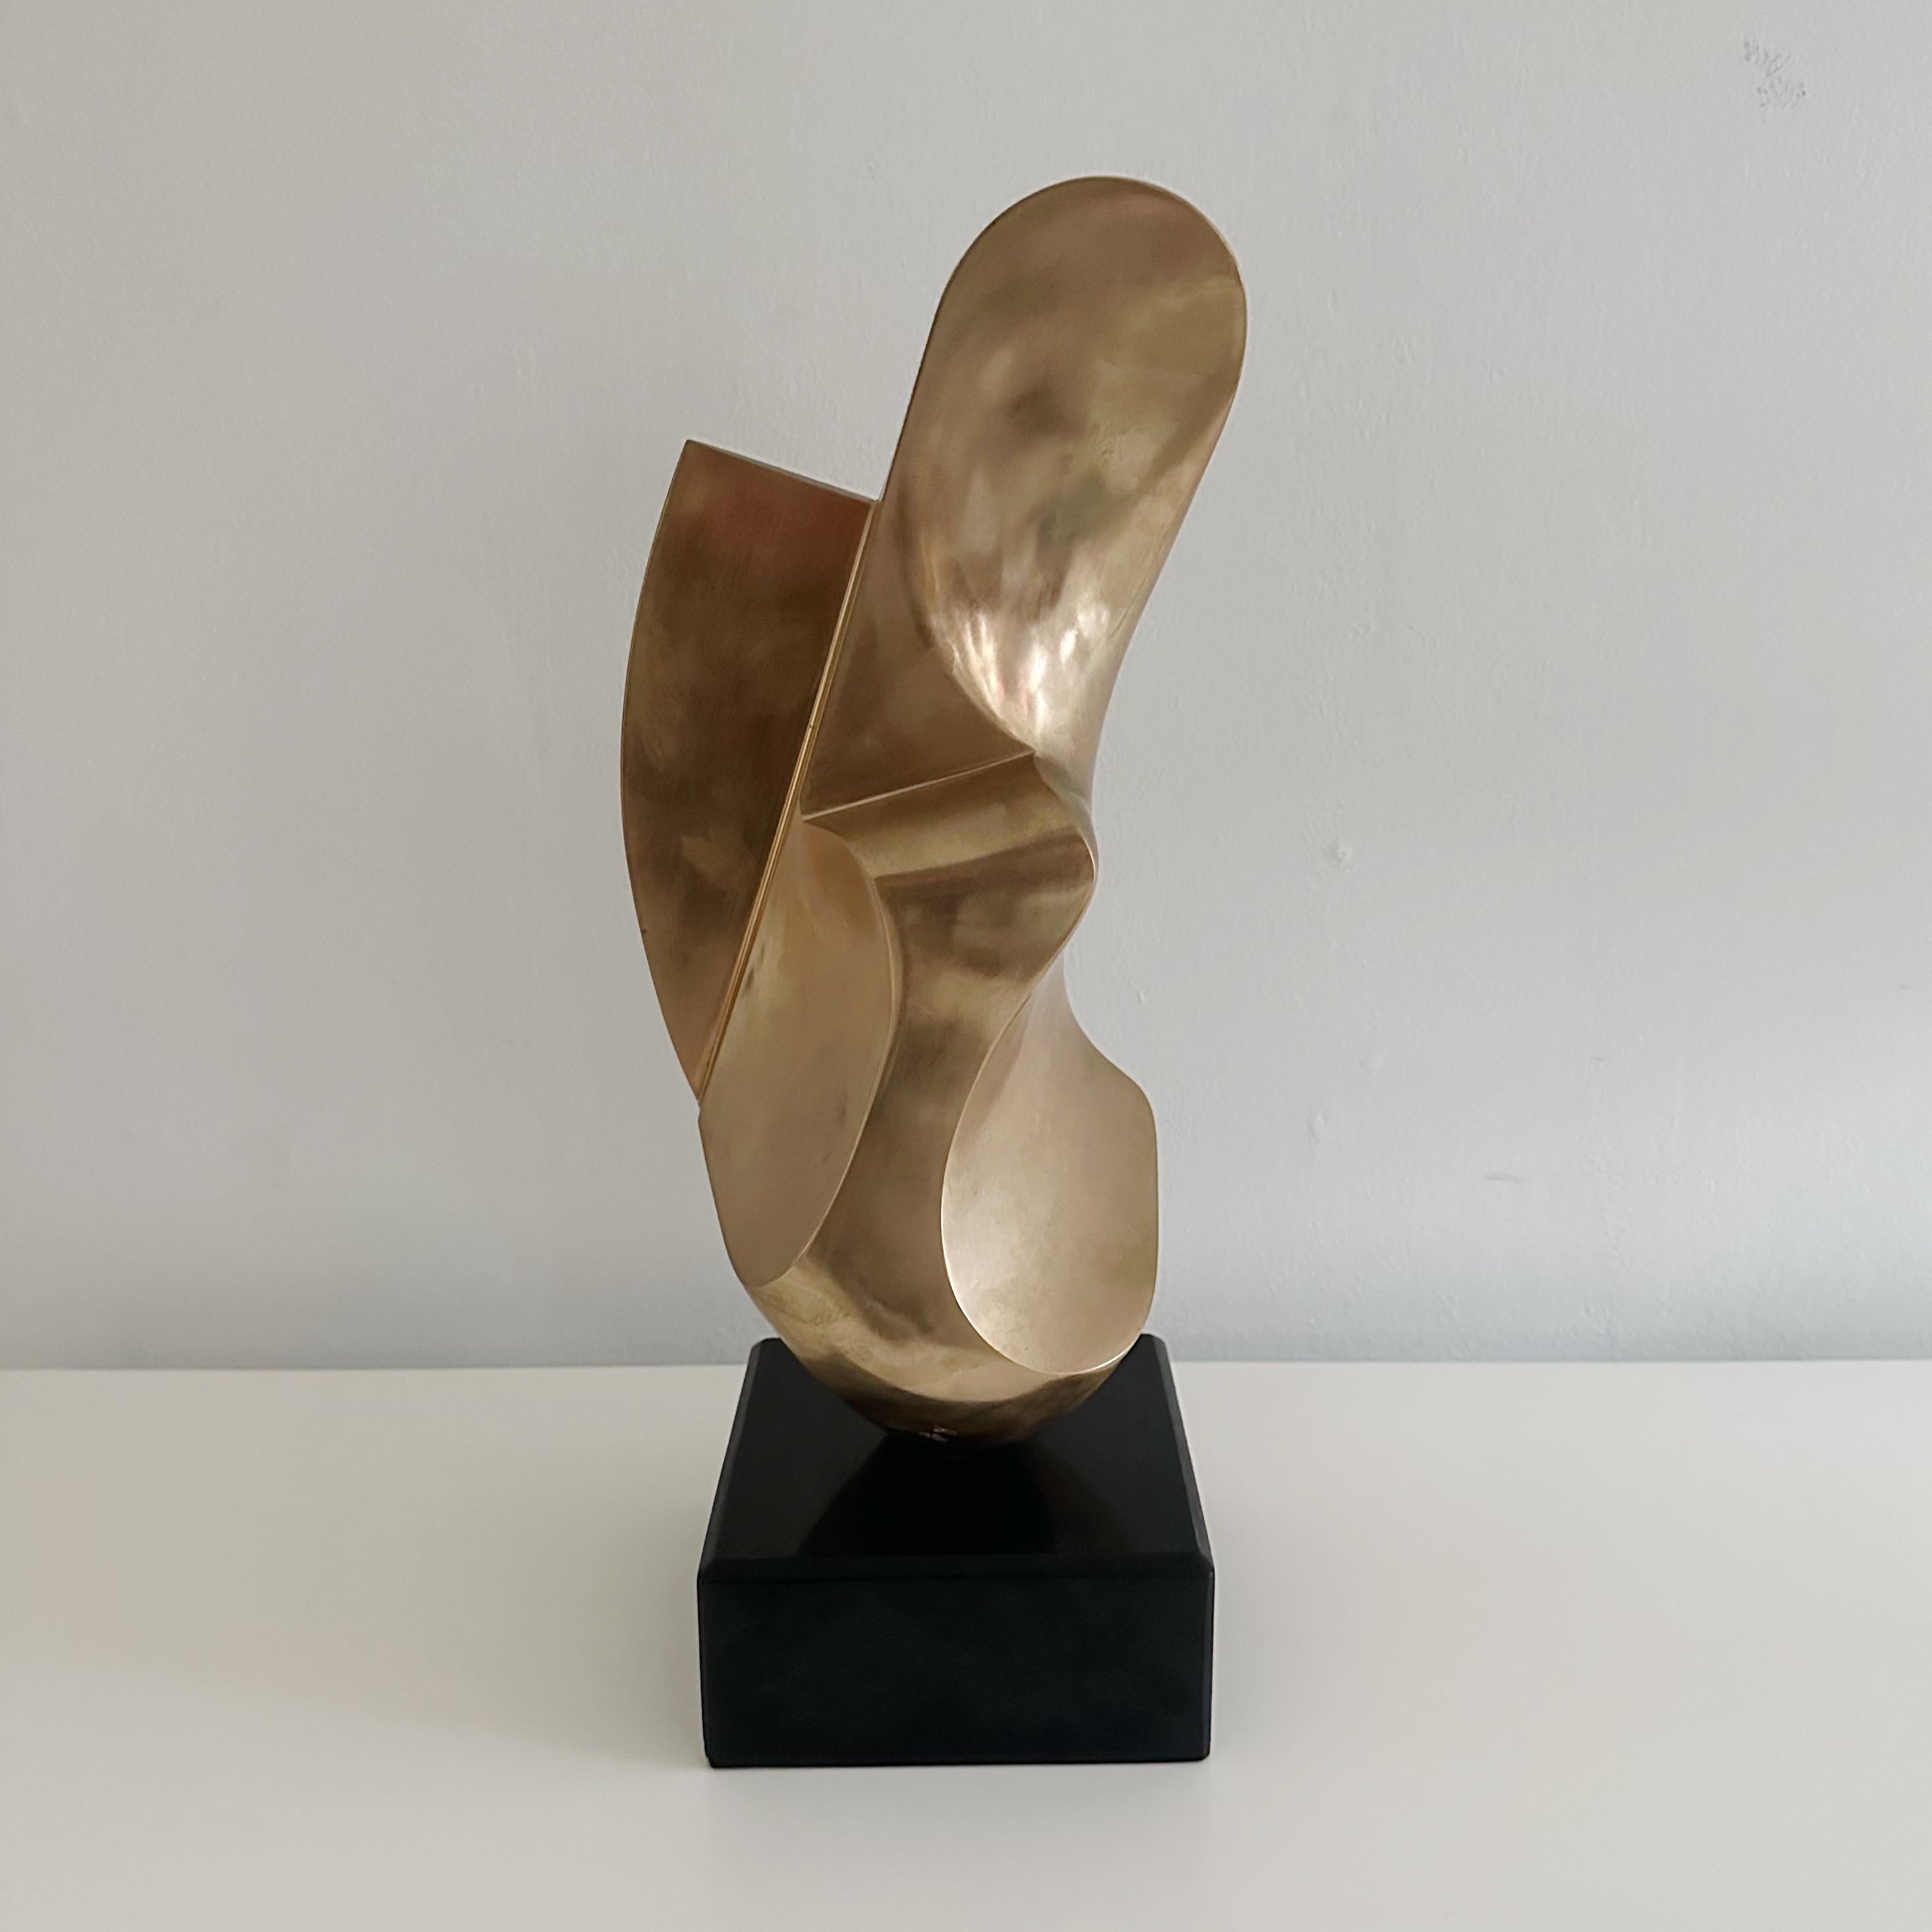  Antonio Grediaga Kieff (Born 1936) Abstract Solid Bronze Sculpture Circa 1974 1